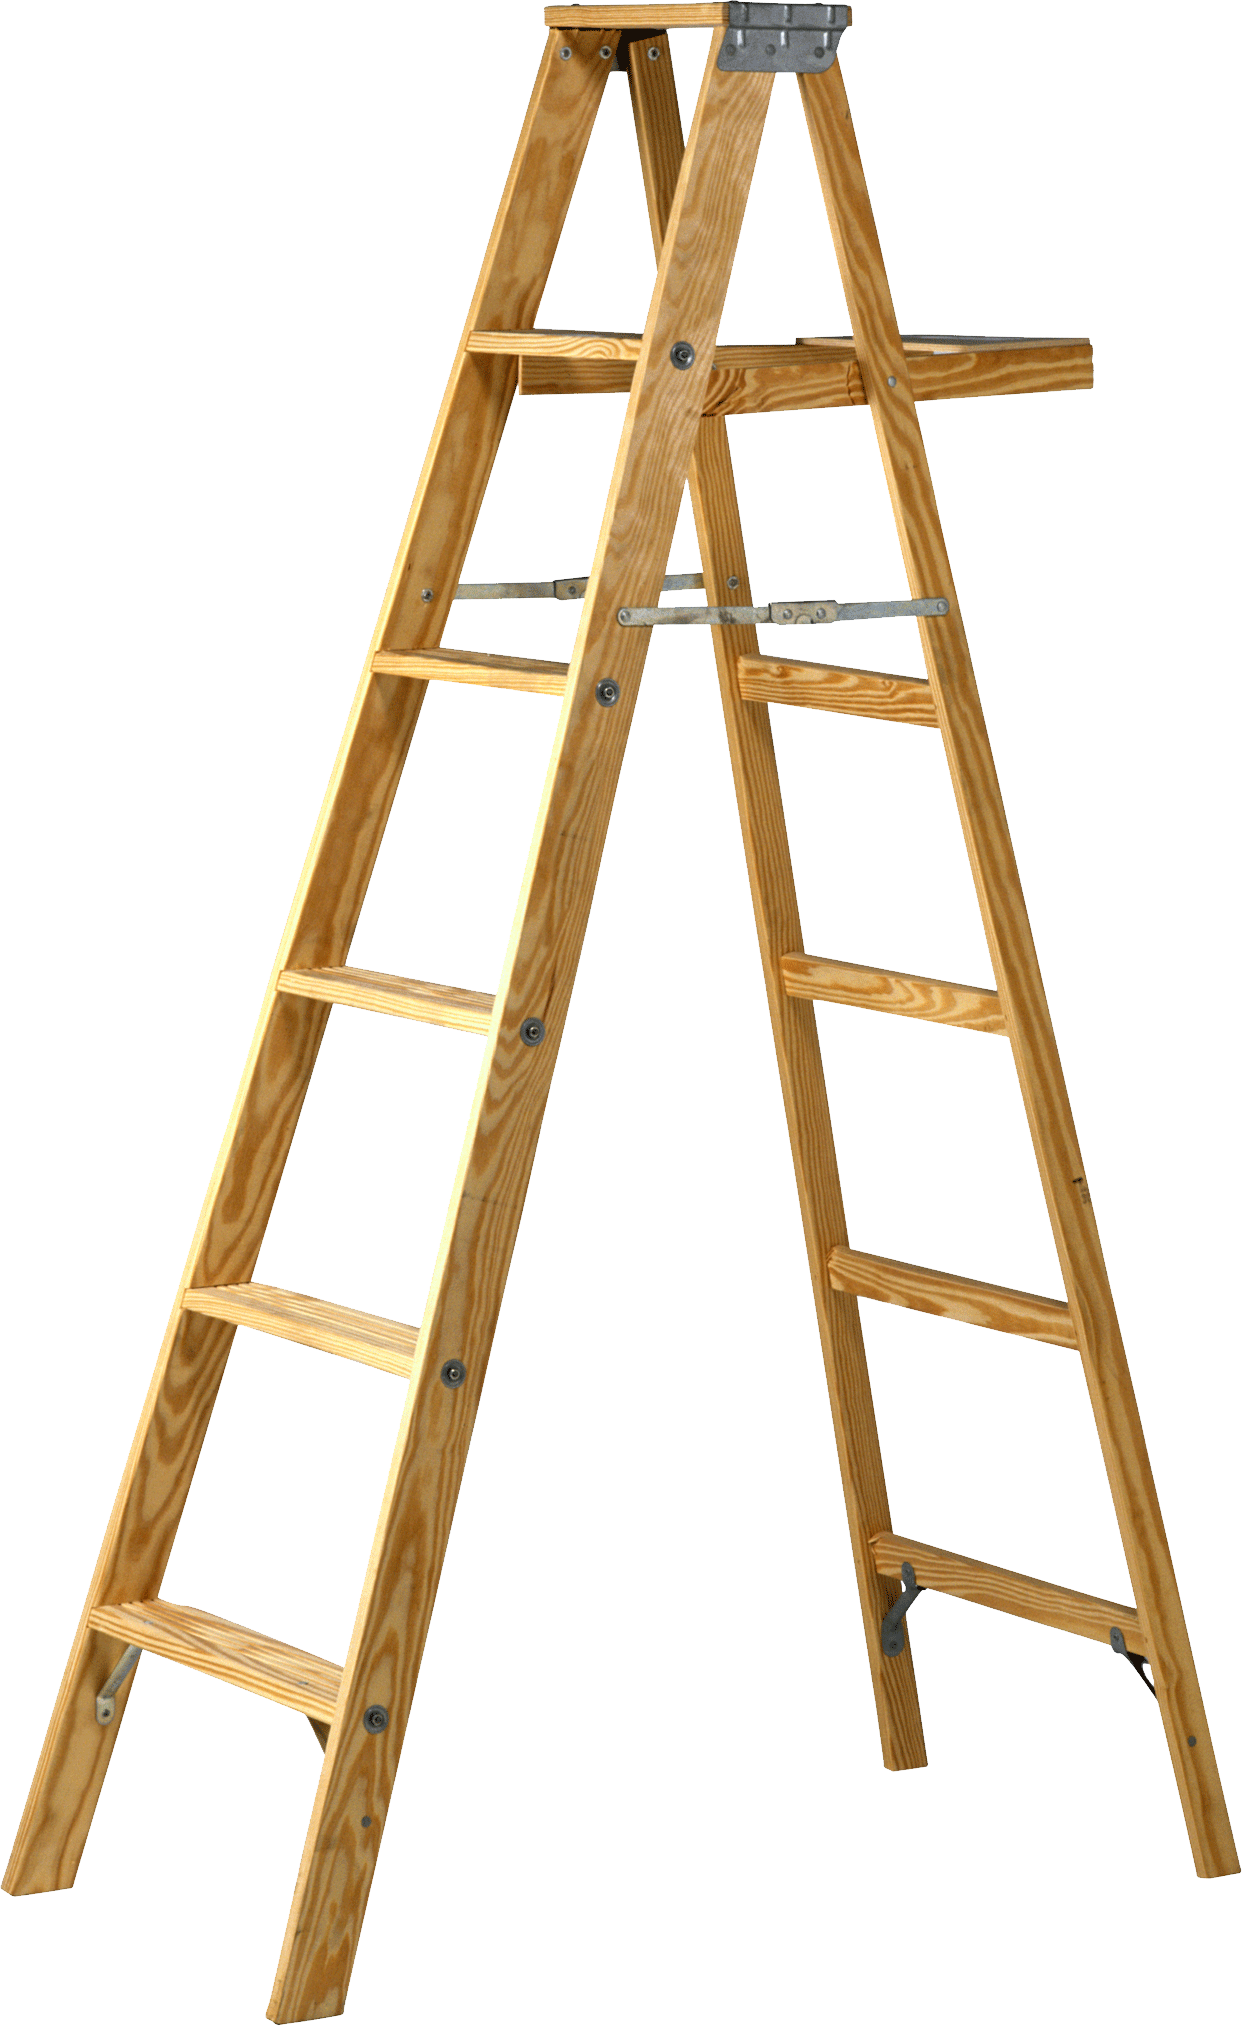 Png free download mart. Ladder clipart short ladder